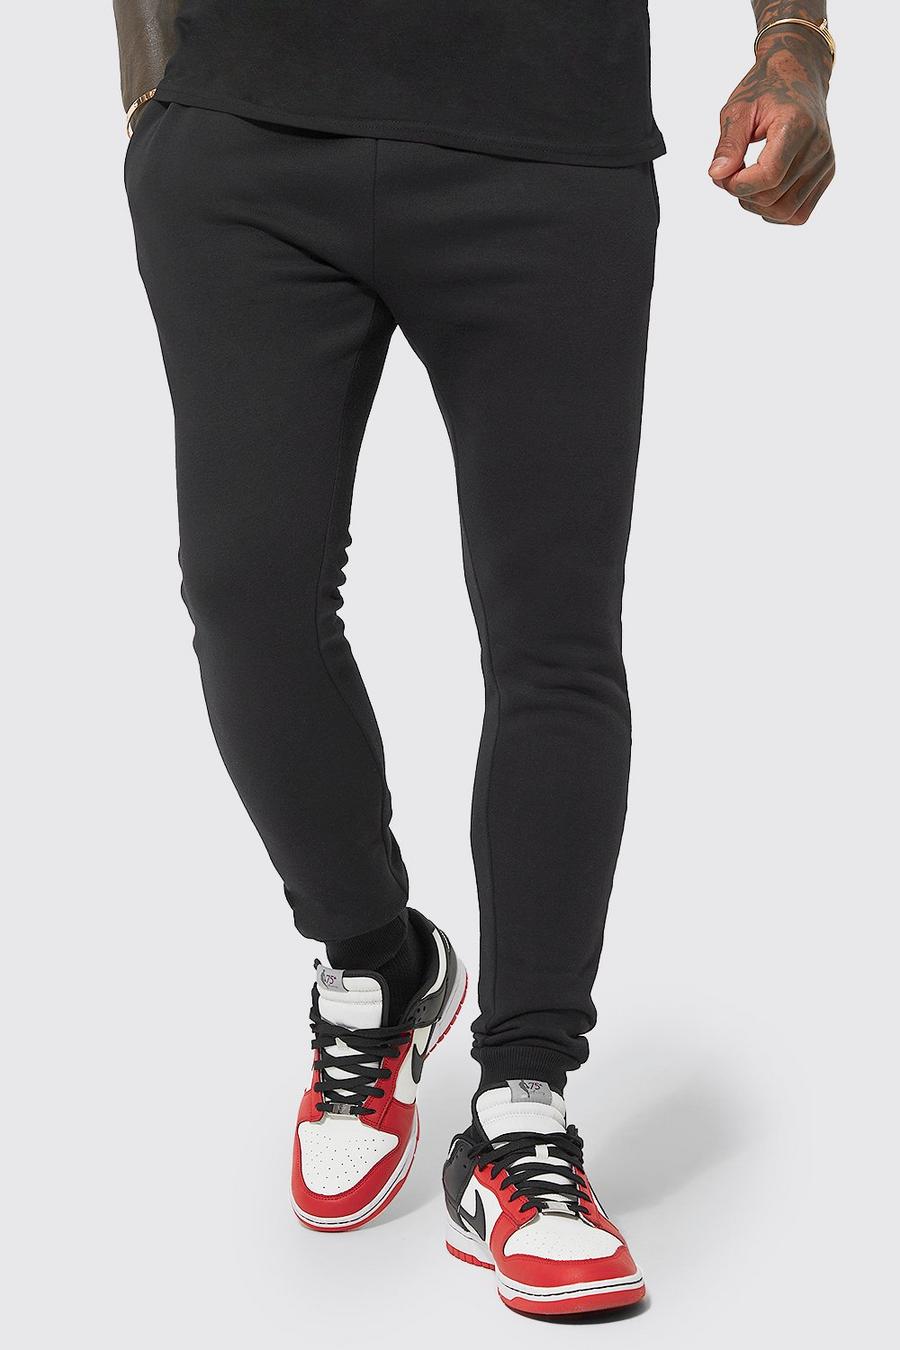 שחור black מכנסי ריצה סופר סקיני מבד משולב בכותנת REEL